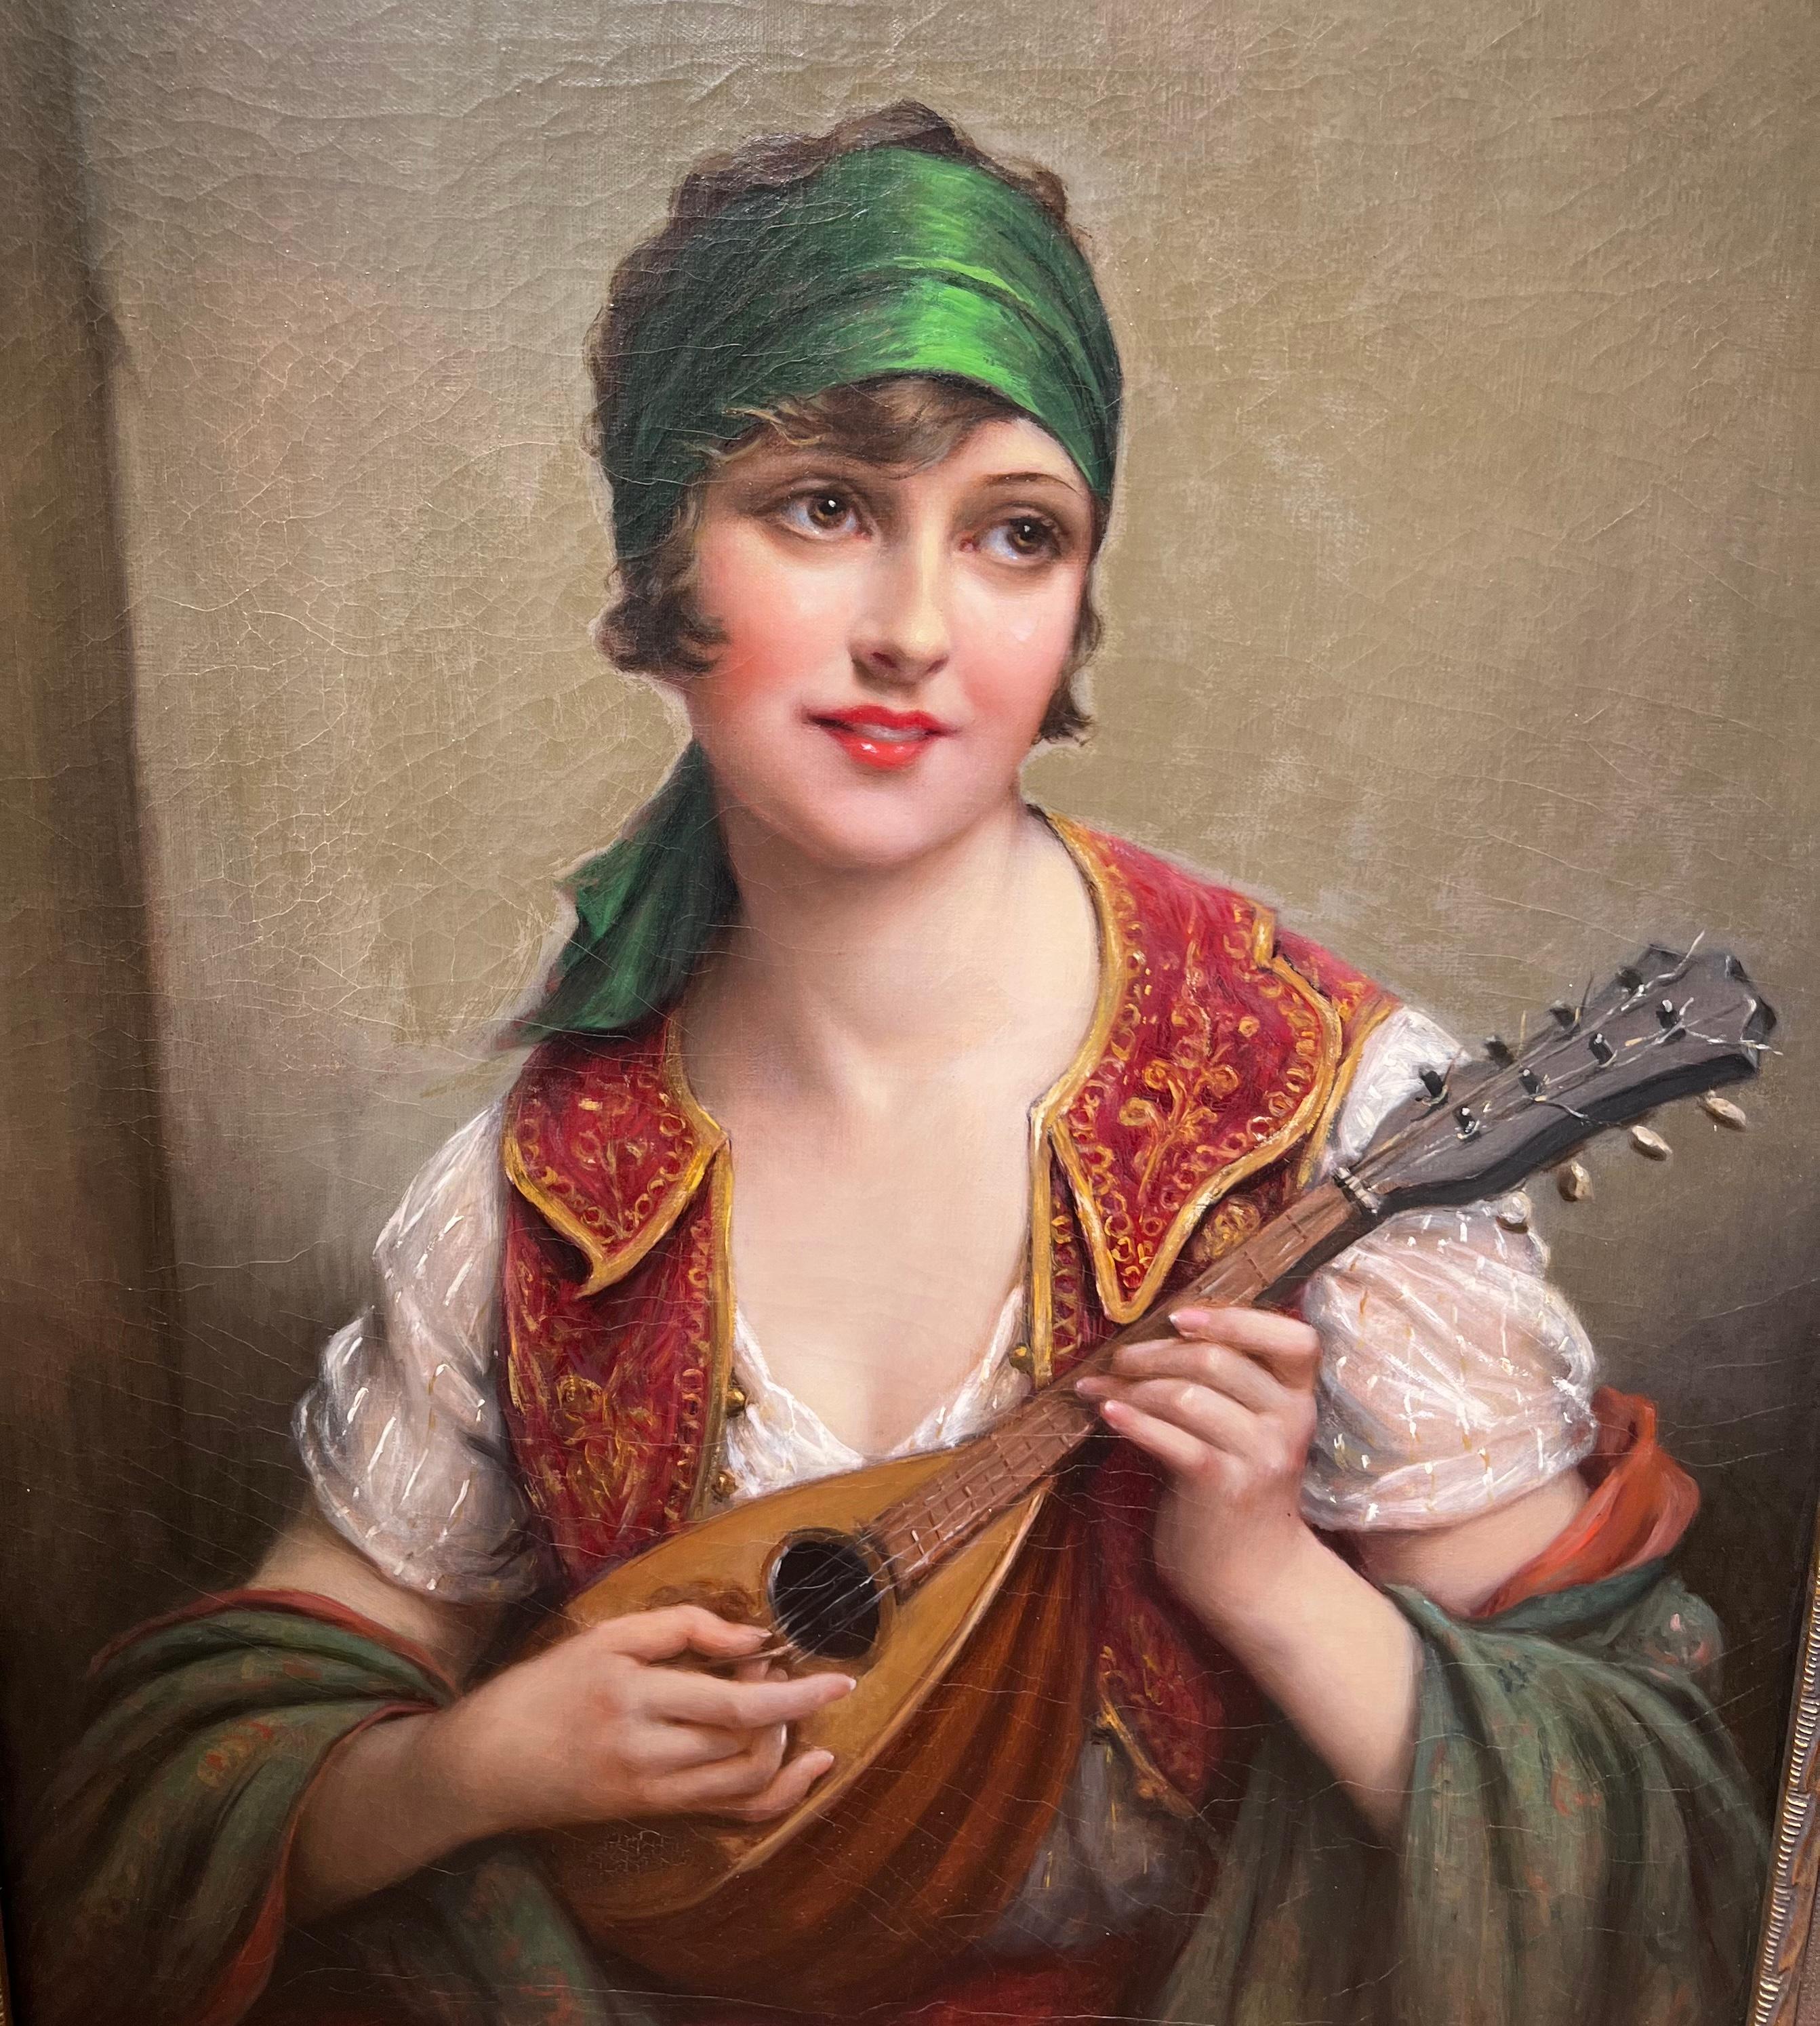 Francois Martin-Kavel (1861 - 1931) war in Frankreich tätig und lebte dort.   Er war ein profilierter Frauenmaler, insbesondere des Orientalismus

Seine Auktionsrekorde liegen bei über $20.000

Ein so schönes realistisches Gemälde!

Hier haben wir